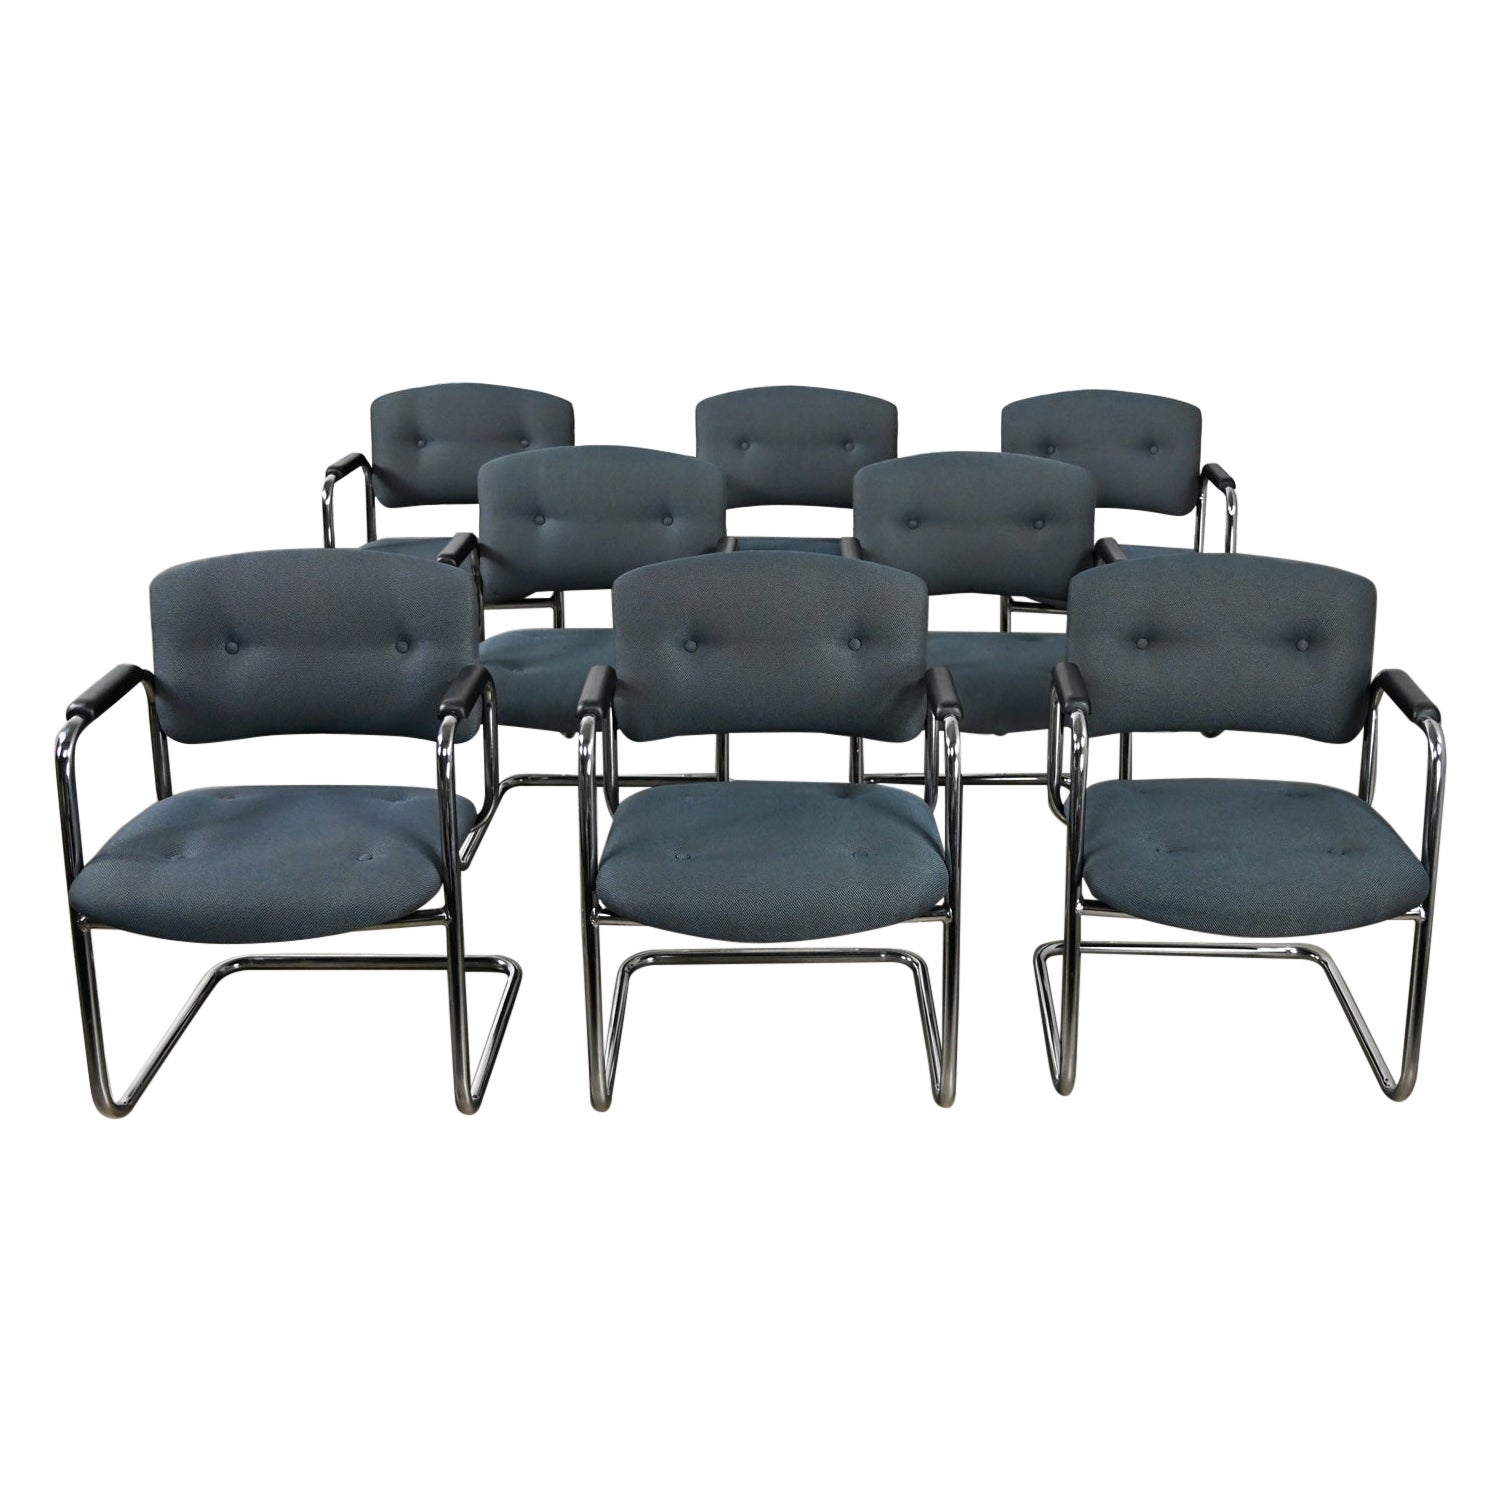 Fin du 20ème siècle, chaises cantilever grises et chromées Style Steelcase Ensemble de 8